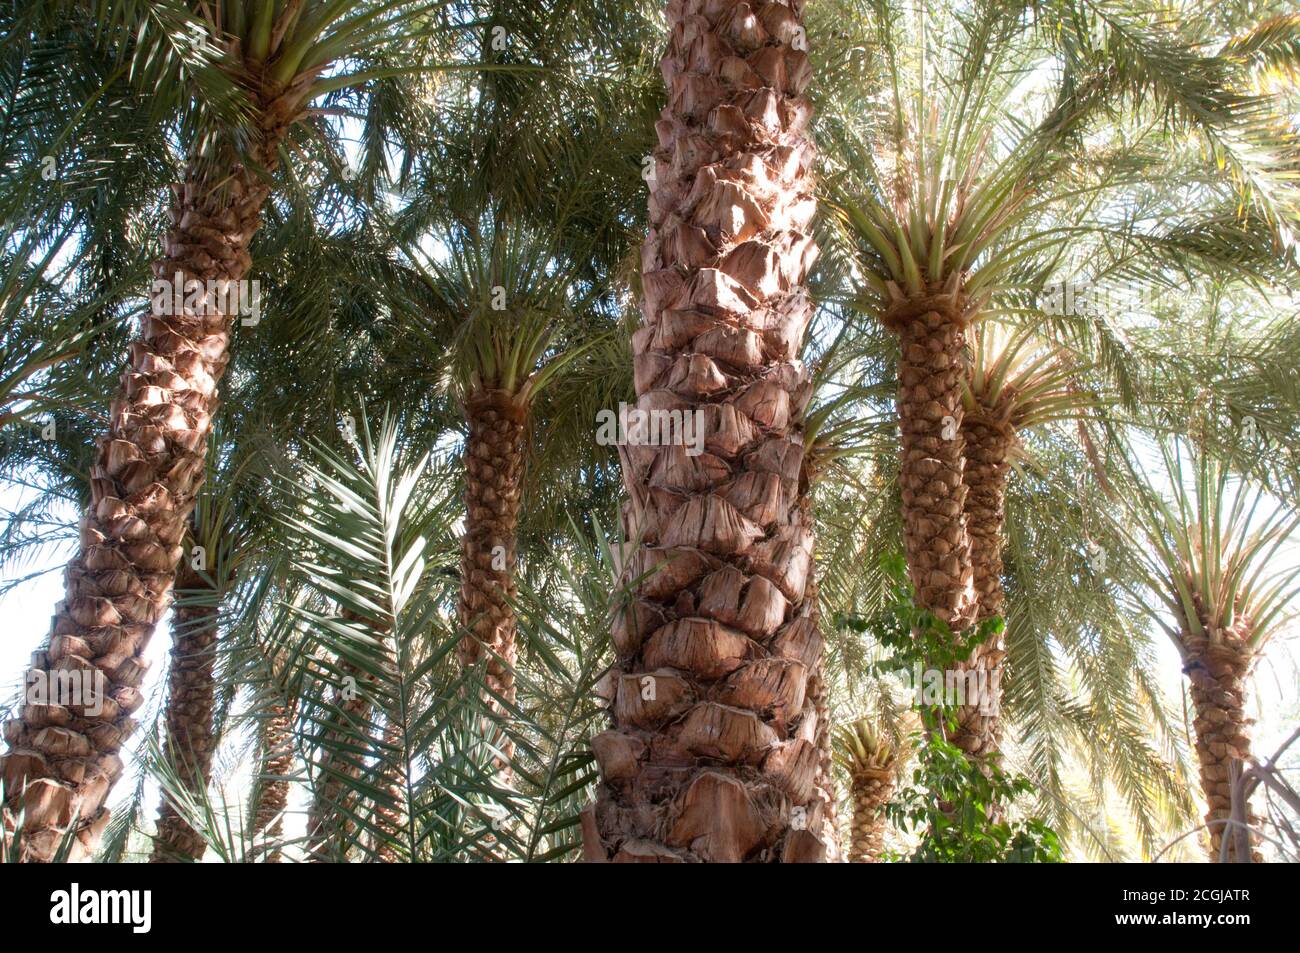 Une palmeraie de date dans une forêt de palmiers au bord d'une forêt de palmiers, dans l'oasis saharienne de Farafra, désert occidental, Egypte. Banque D'Images